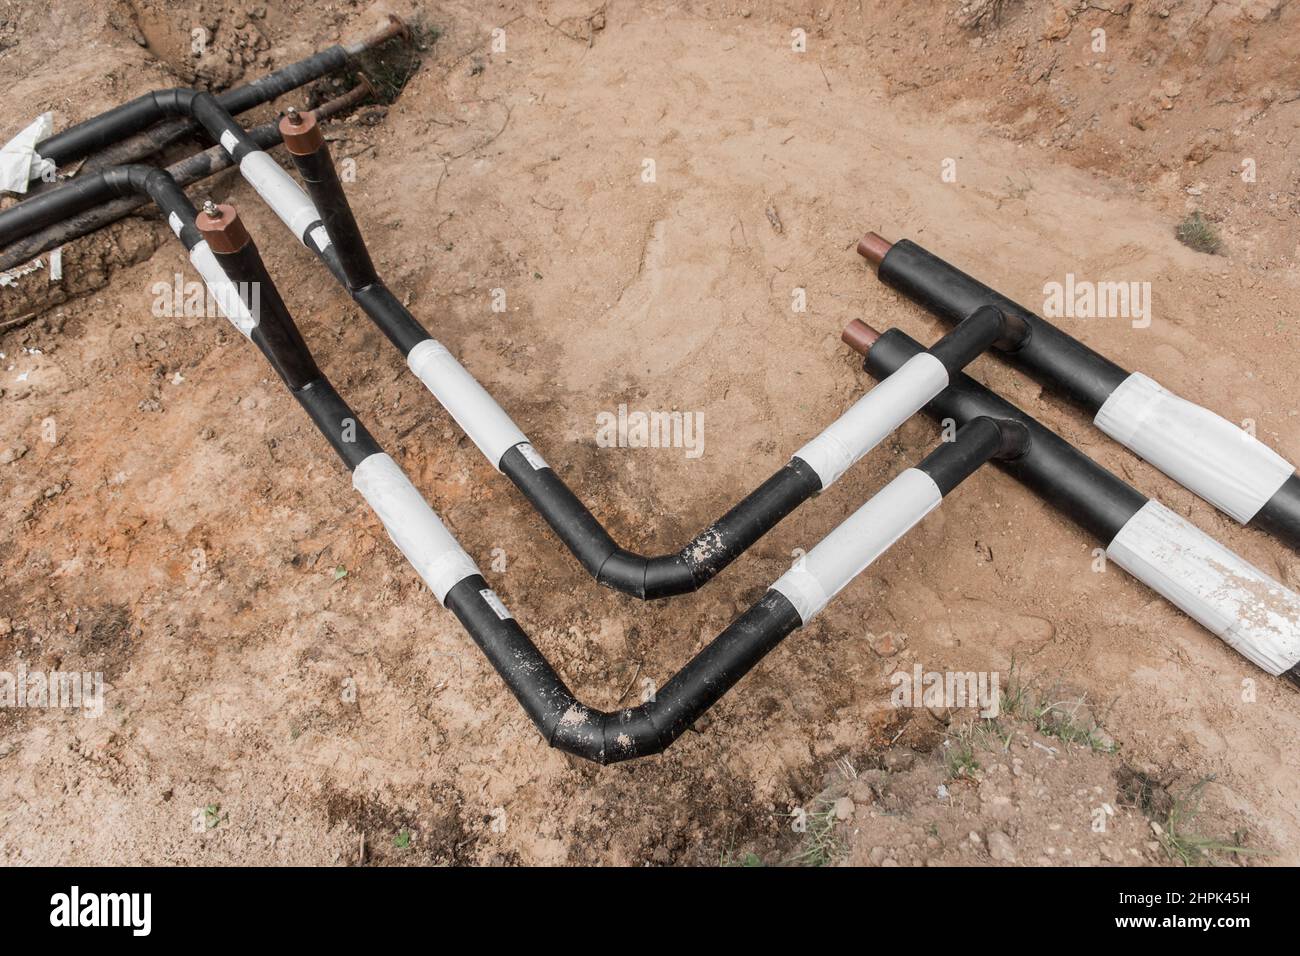 Reparatur der Wasserleitung des Heizungshauptrohrs in der Erdgraben-Pipeline auf der Baustelle. Stockfoto